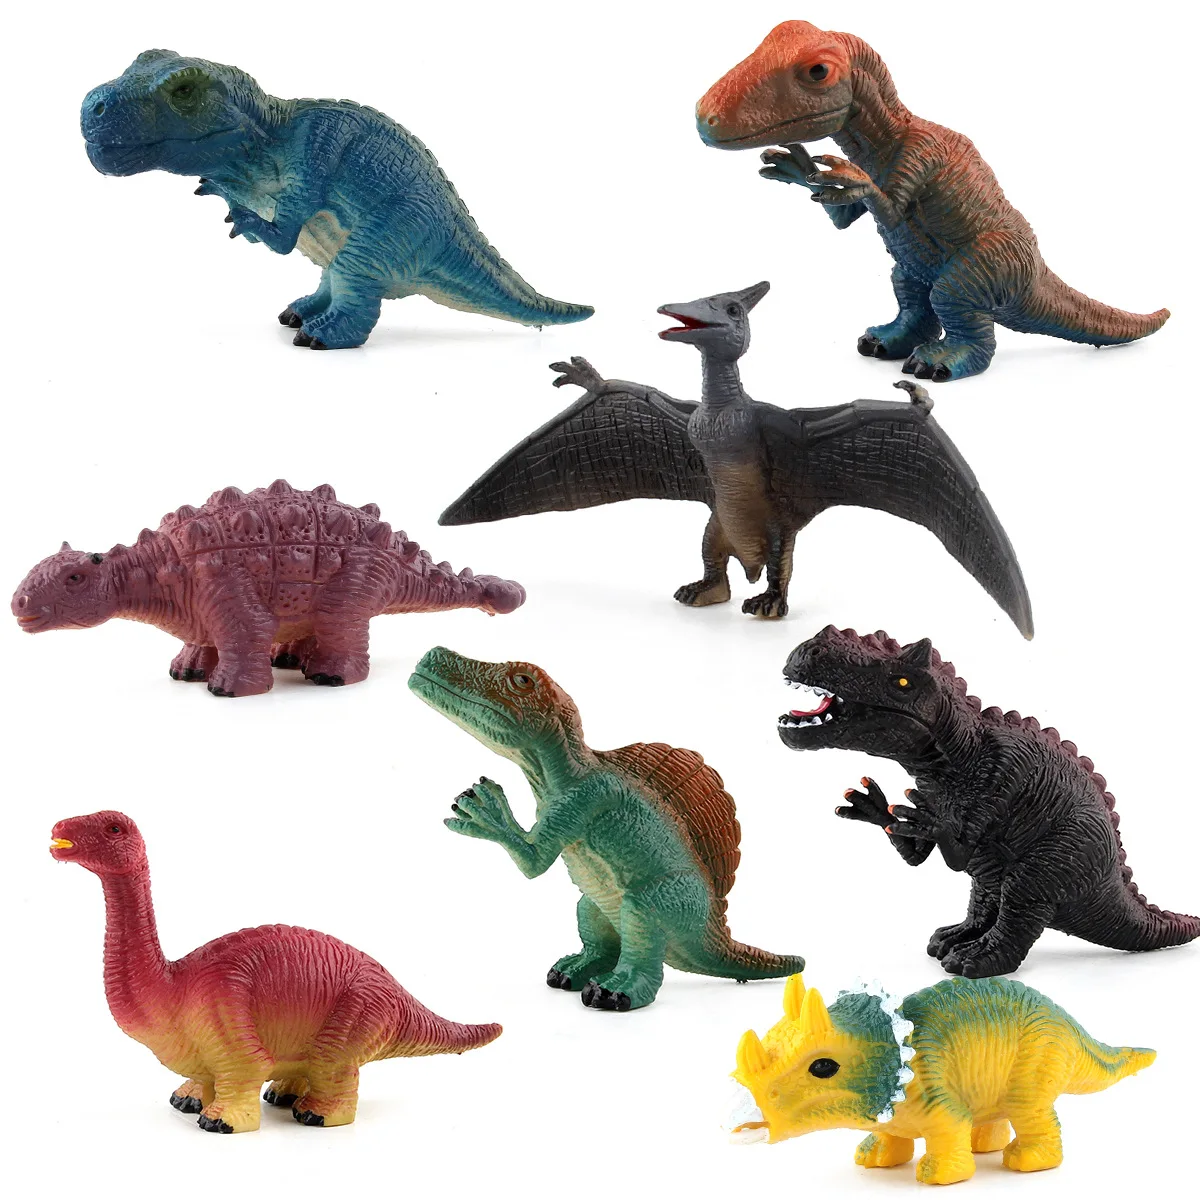 

Моделирование игрушечные модели динозавров дракона в натуральную величину Велоцираптор животных Птерозавр Spinosaur саишания фигурка украшен...